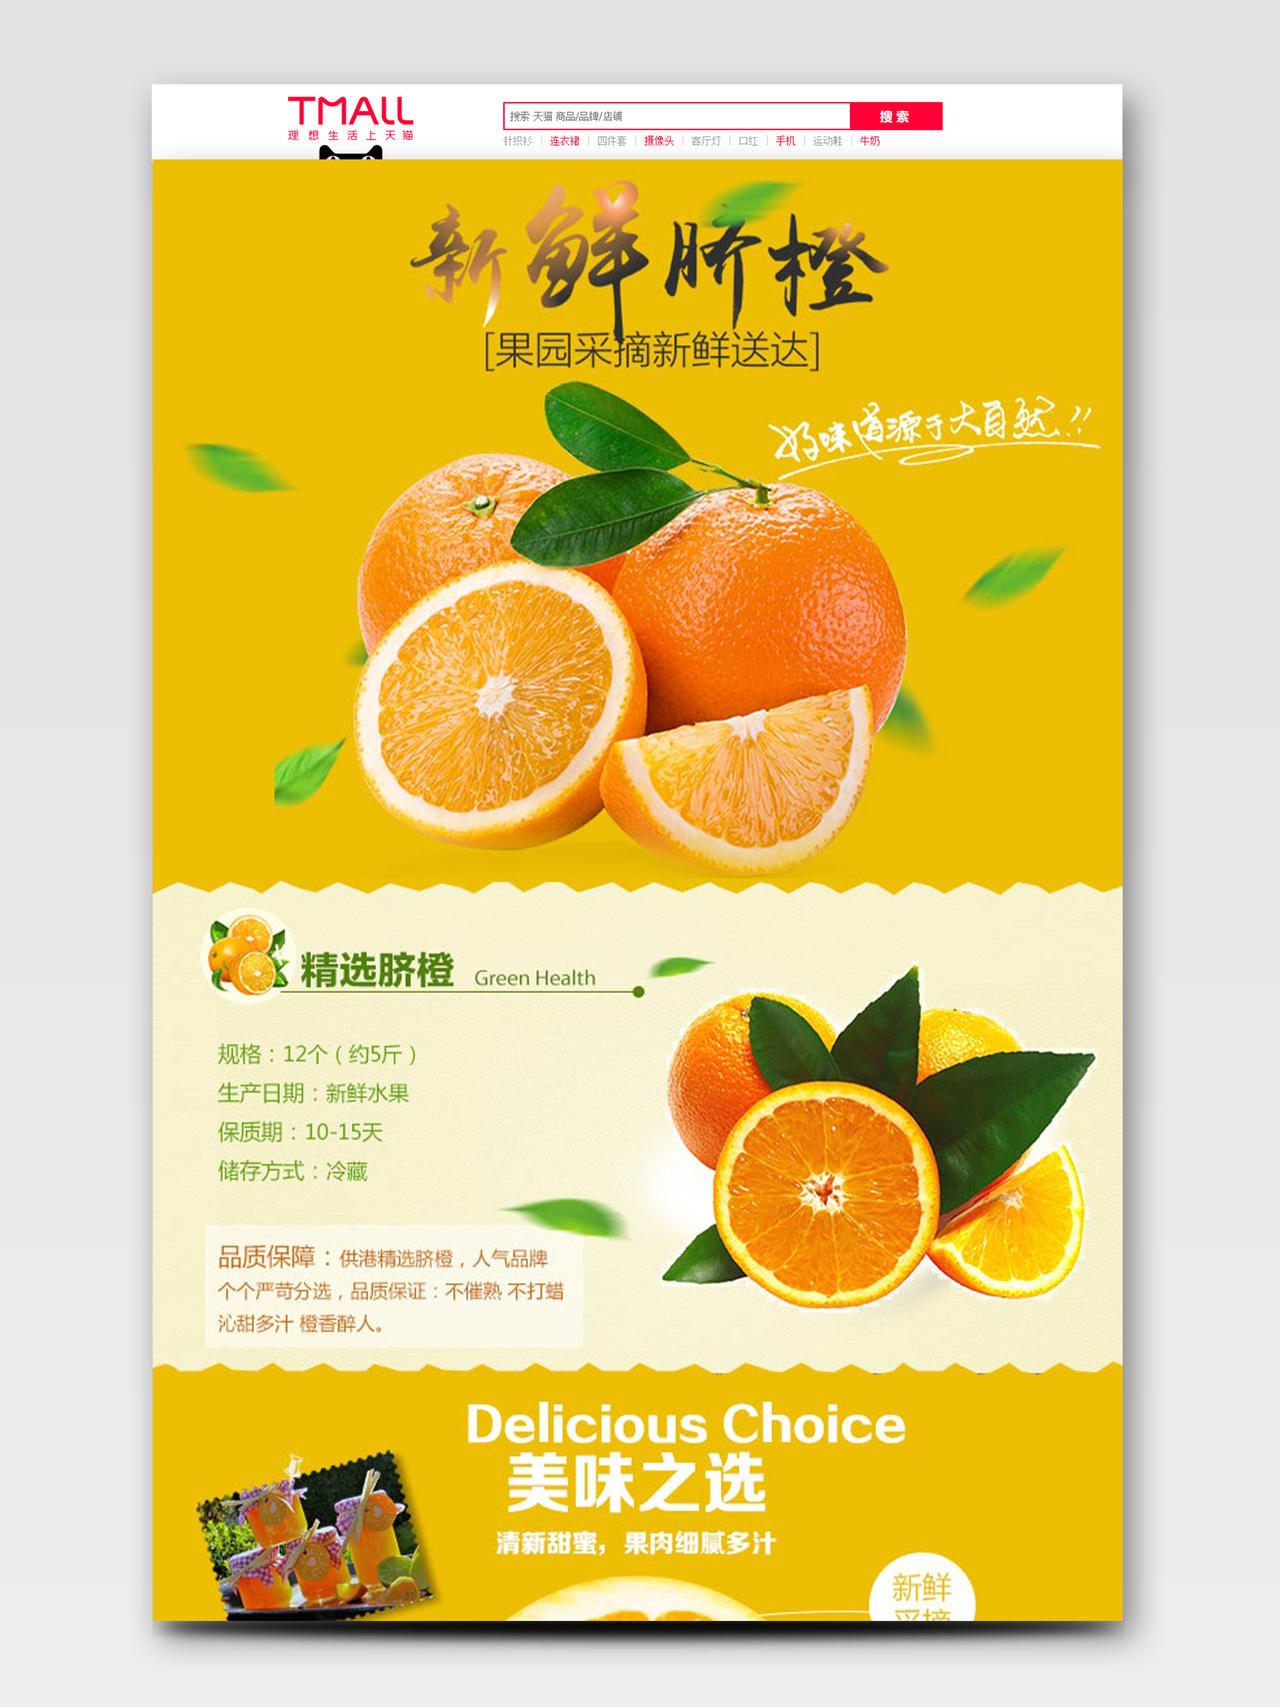 黄色简约新鲜脐橙生鲜水果淘宝天猫电商橙子促销首页